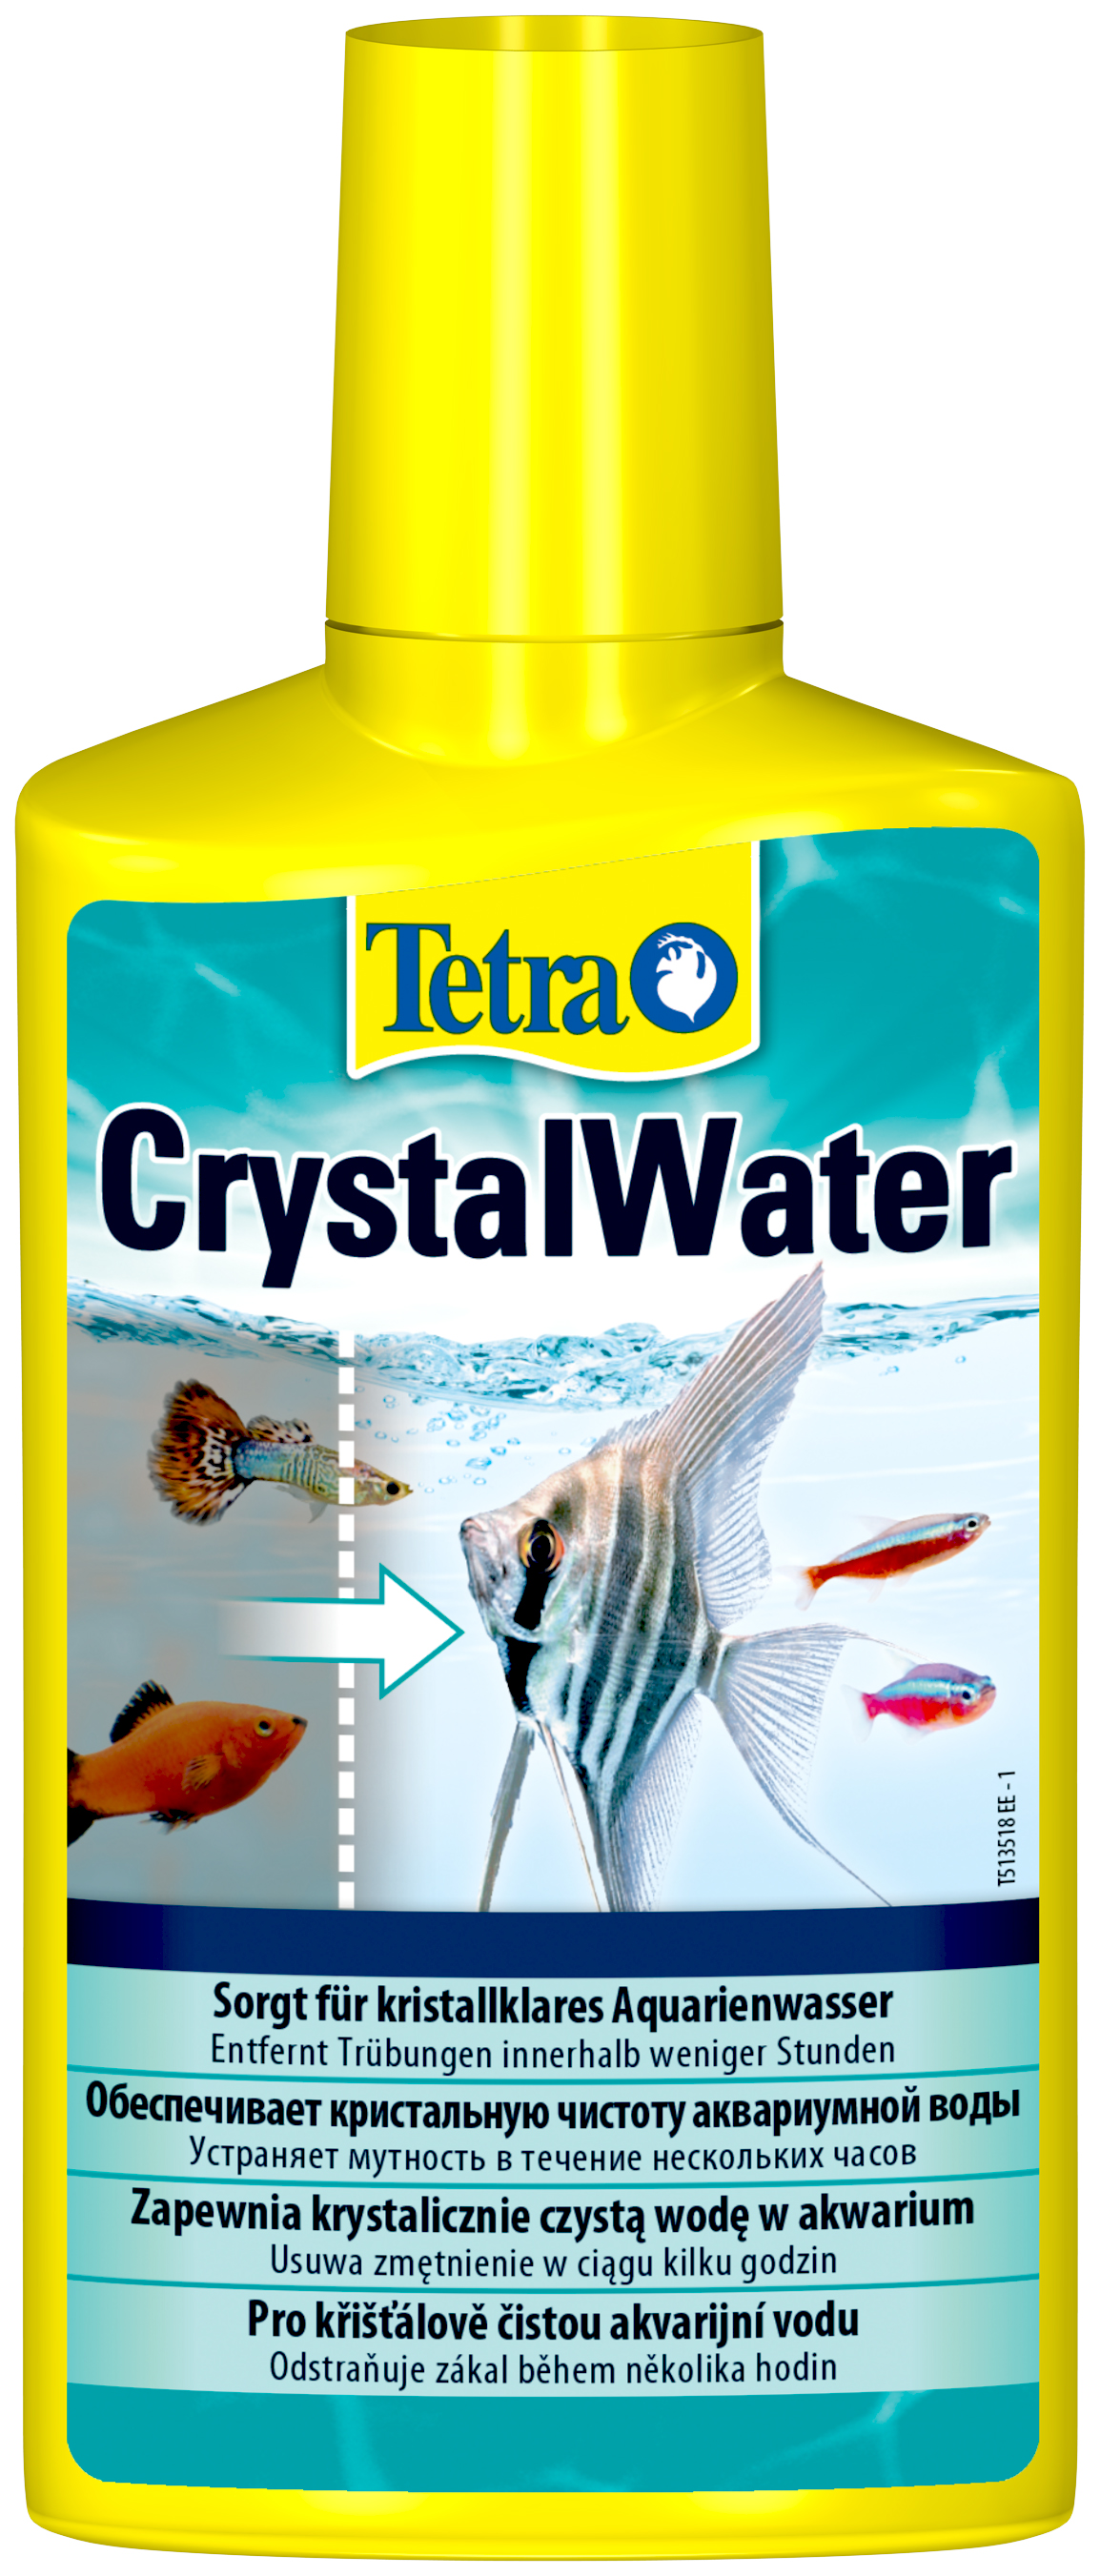 Средство Tetra CrystalWater для очистки воды от всех видов мути, 2 шт по 500 мл